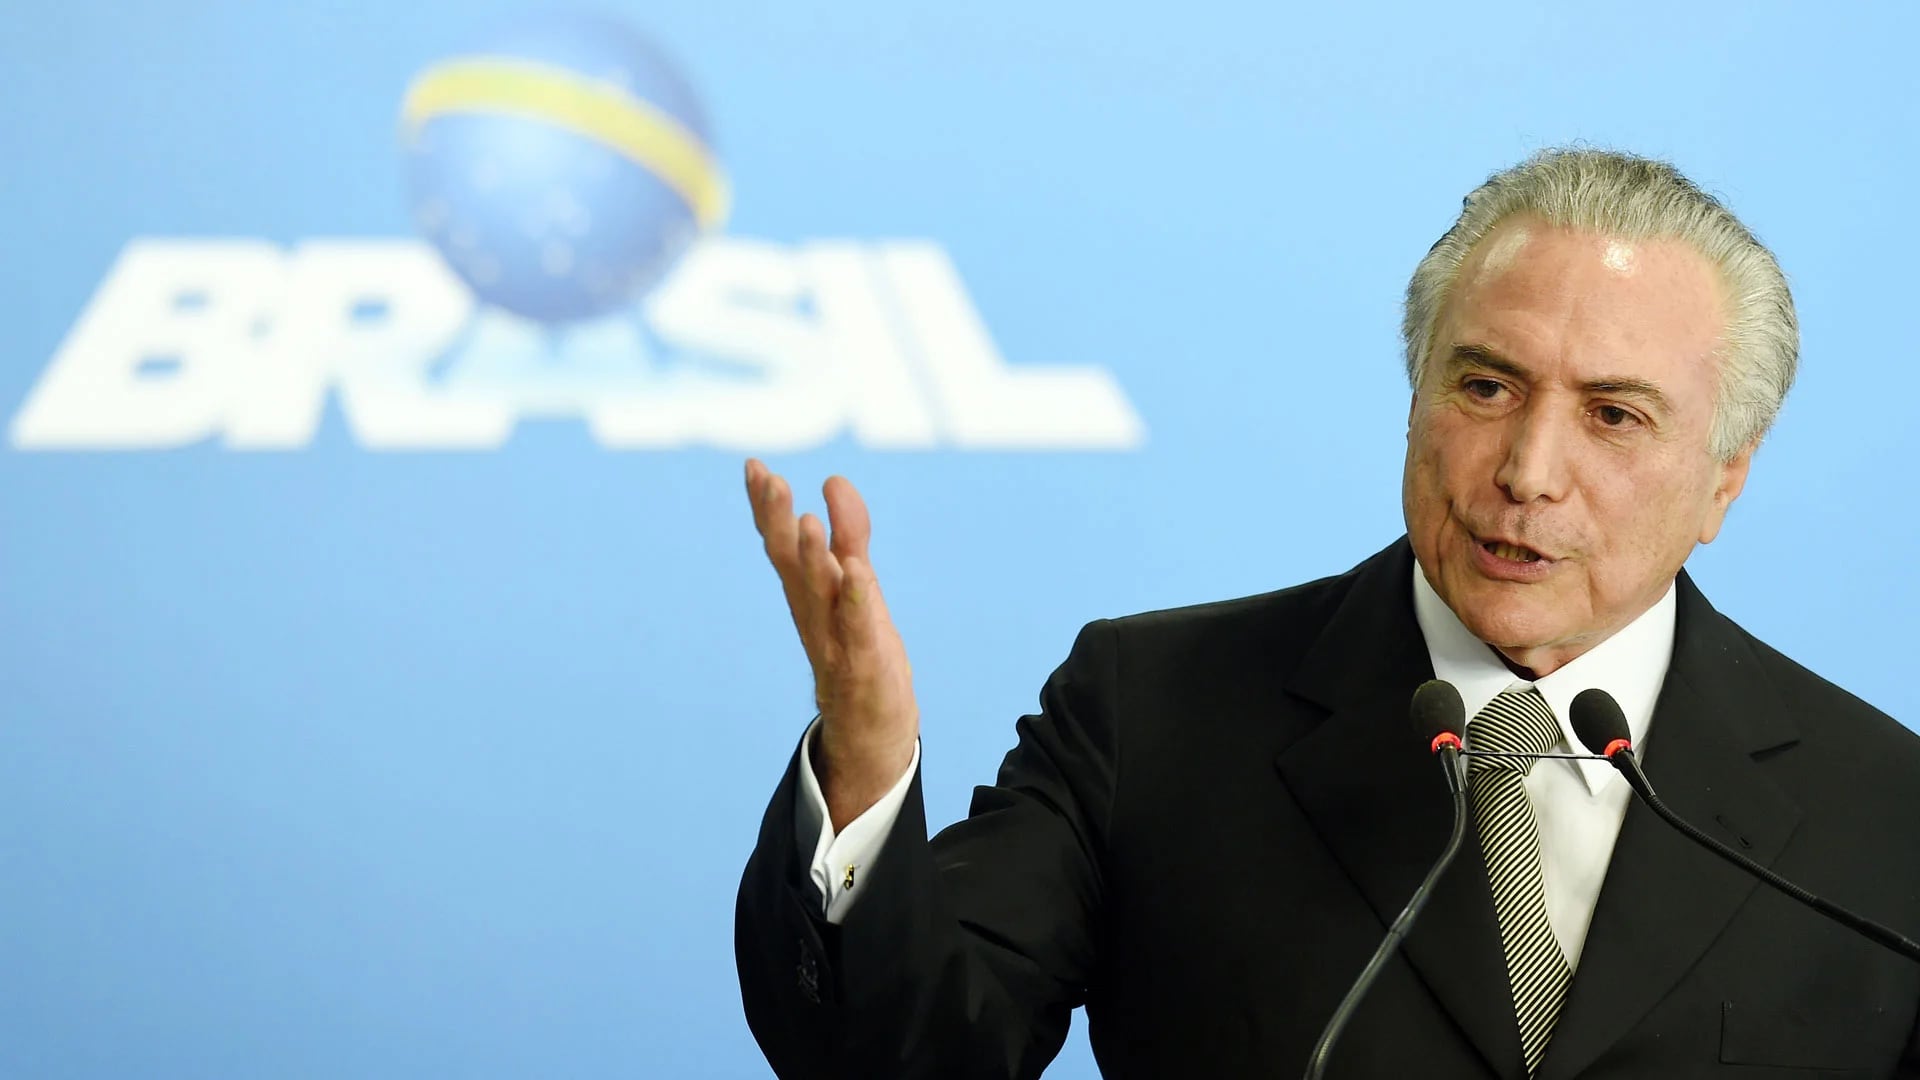 El presidente Michel Temer logró un retroceso menor al previsto en la economía brasileña. (AFP)